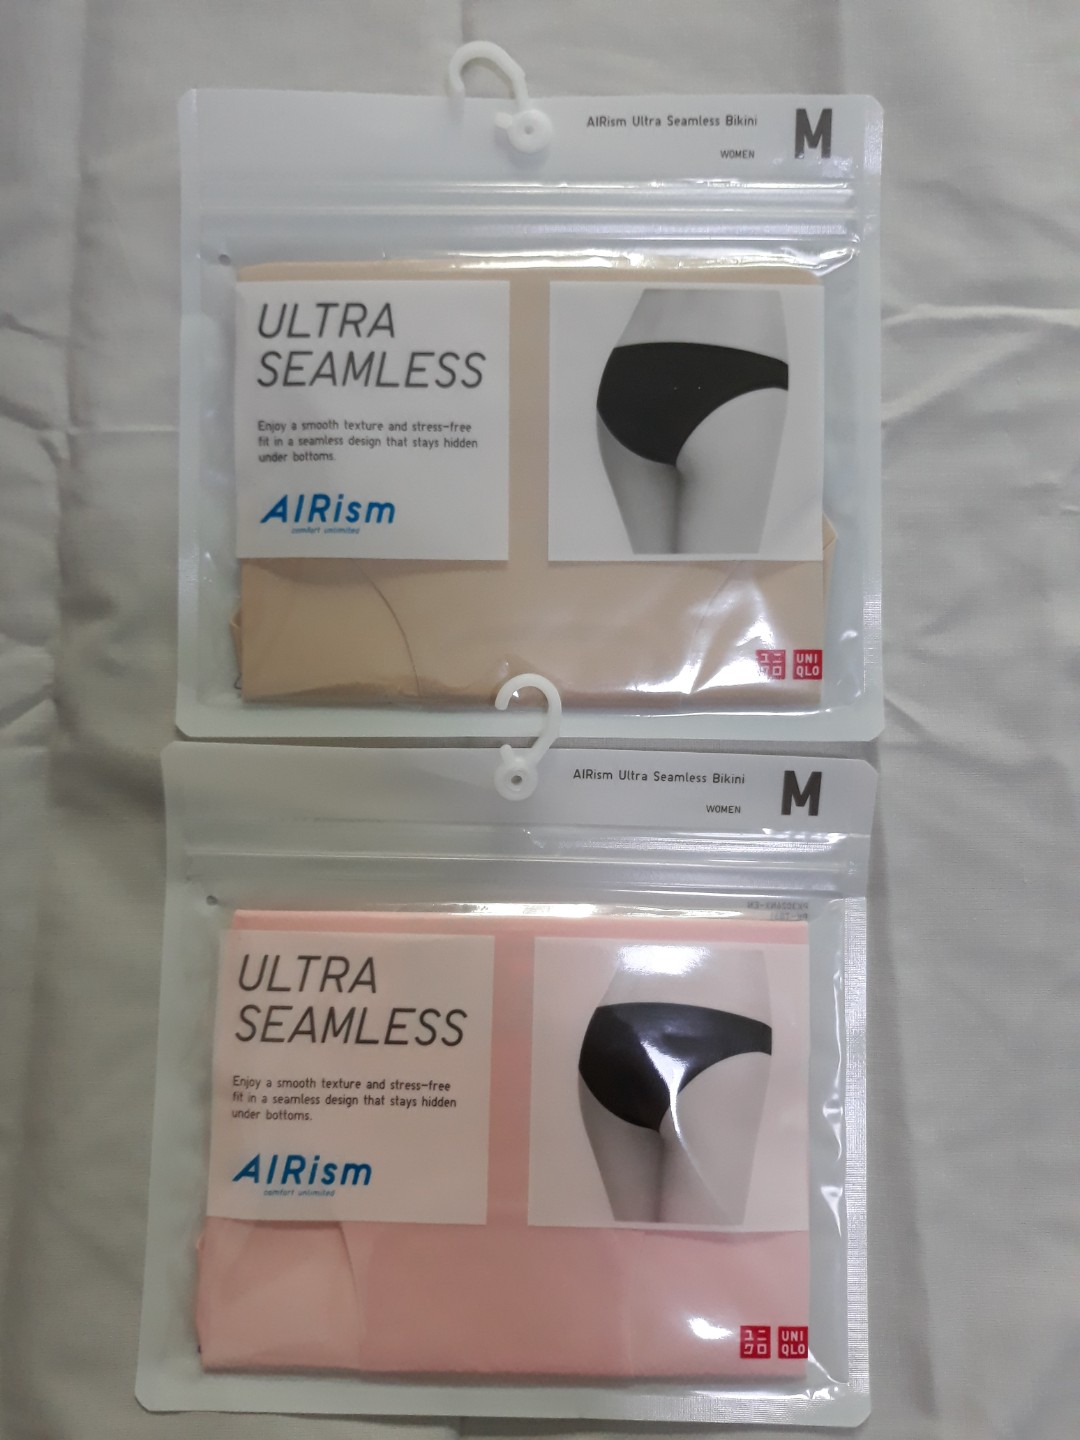 Uniqlo AIRsim ultra seamless underwear, Women's Fashion, New